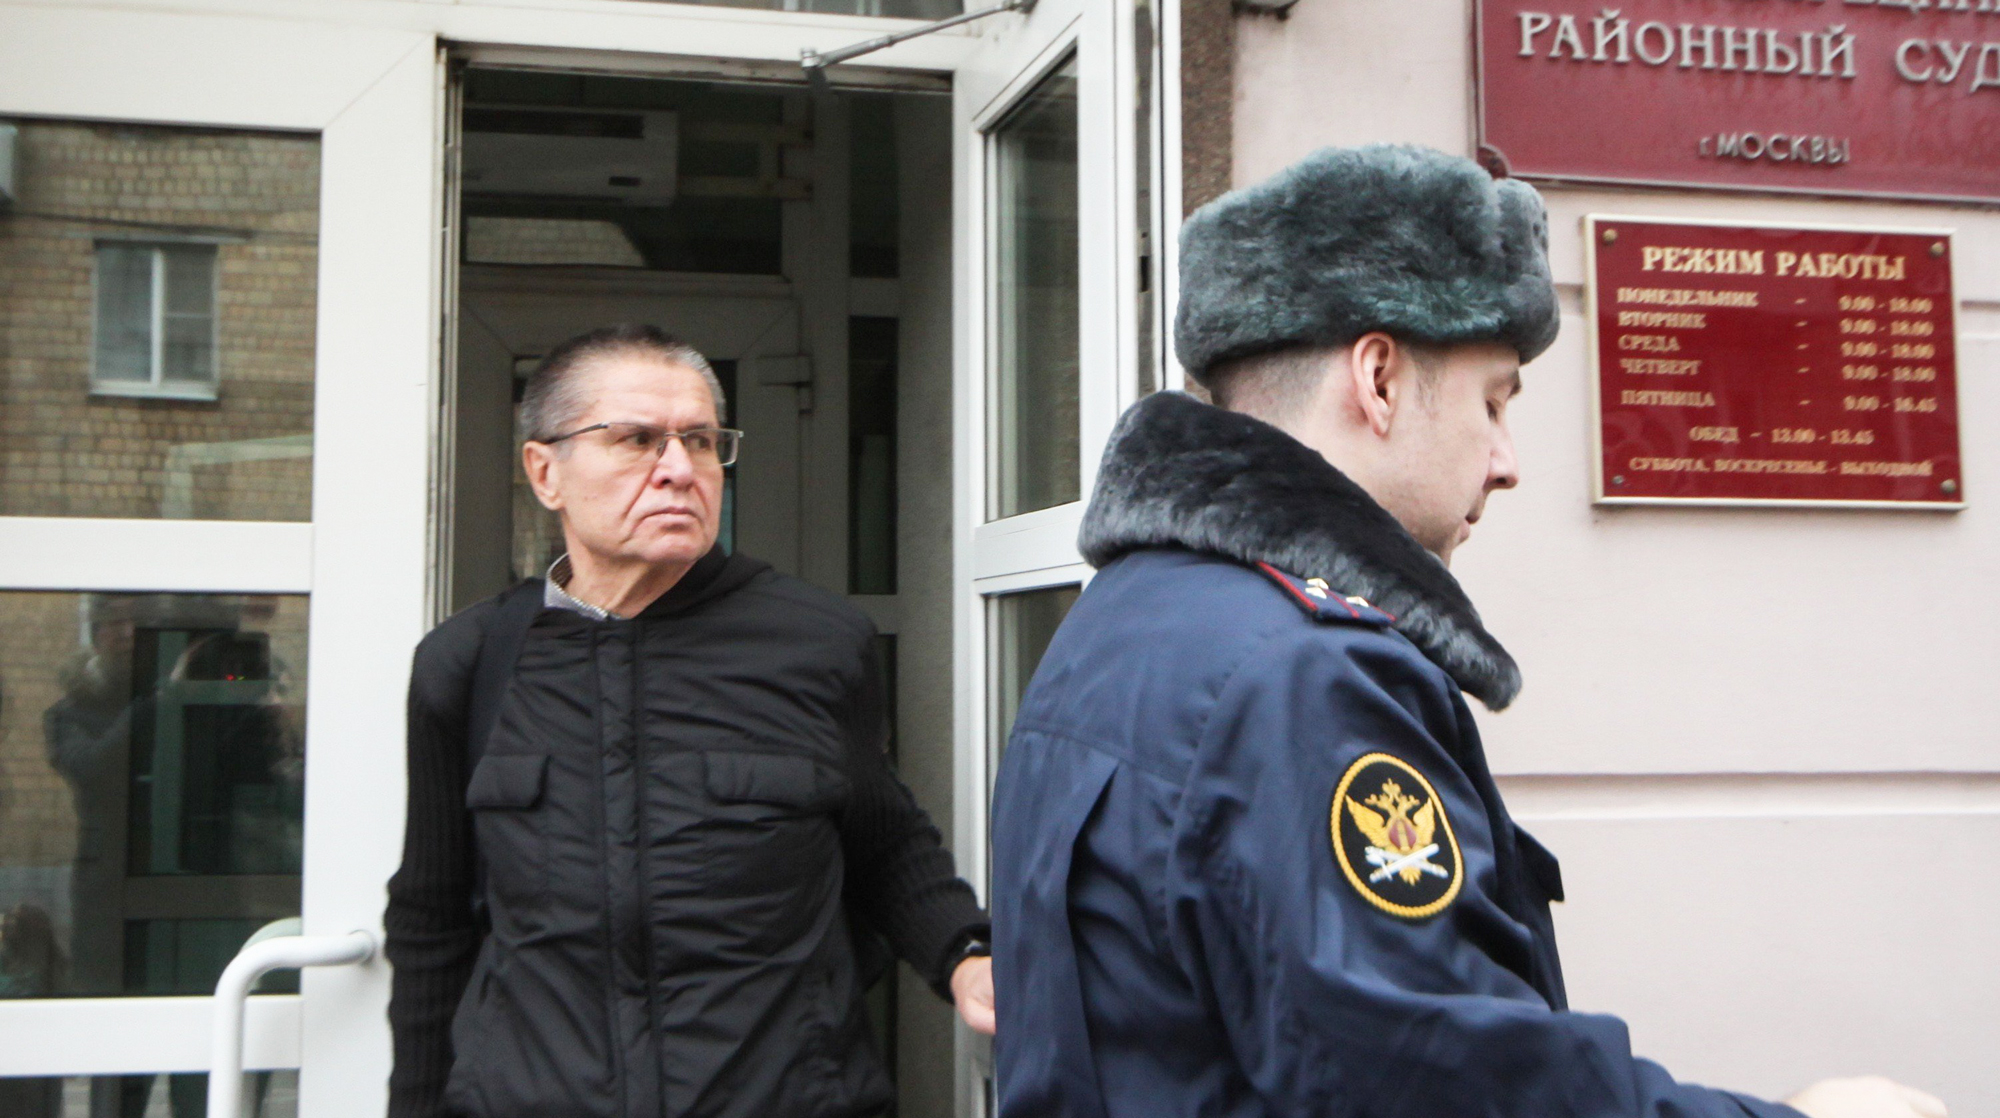 Бывший министр сообщил, что прочитал около 50 произведений, находясь под домашним арестом Фото: © Агентство Москва/Ведяшкин Сергей